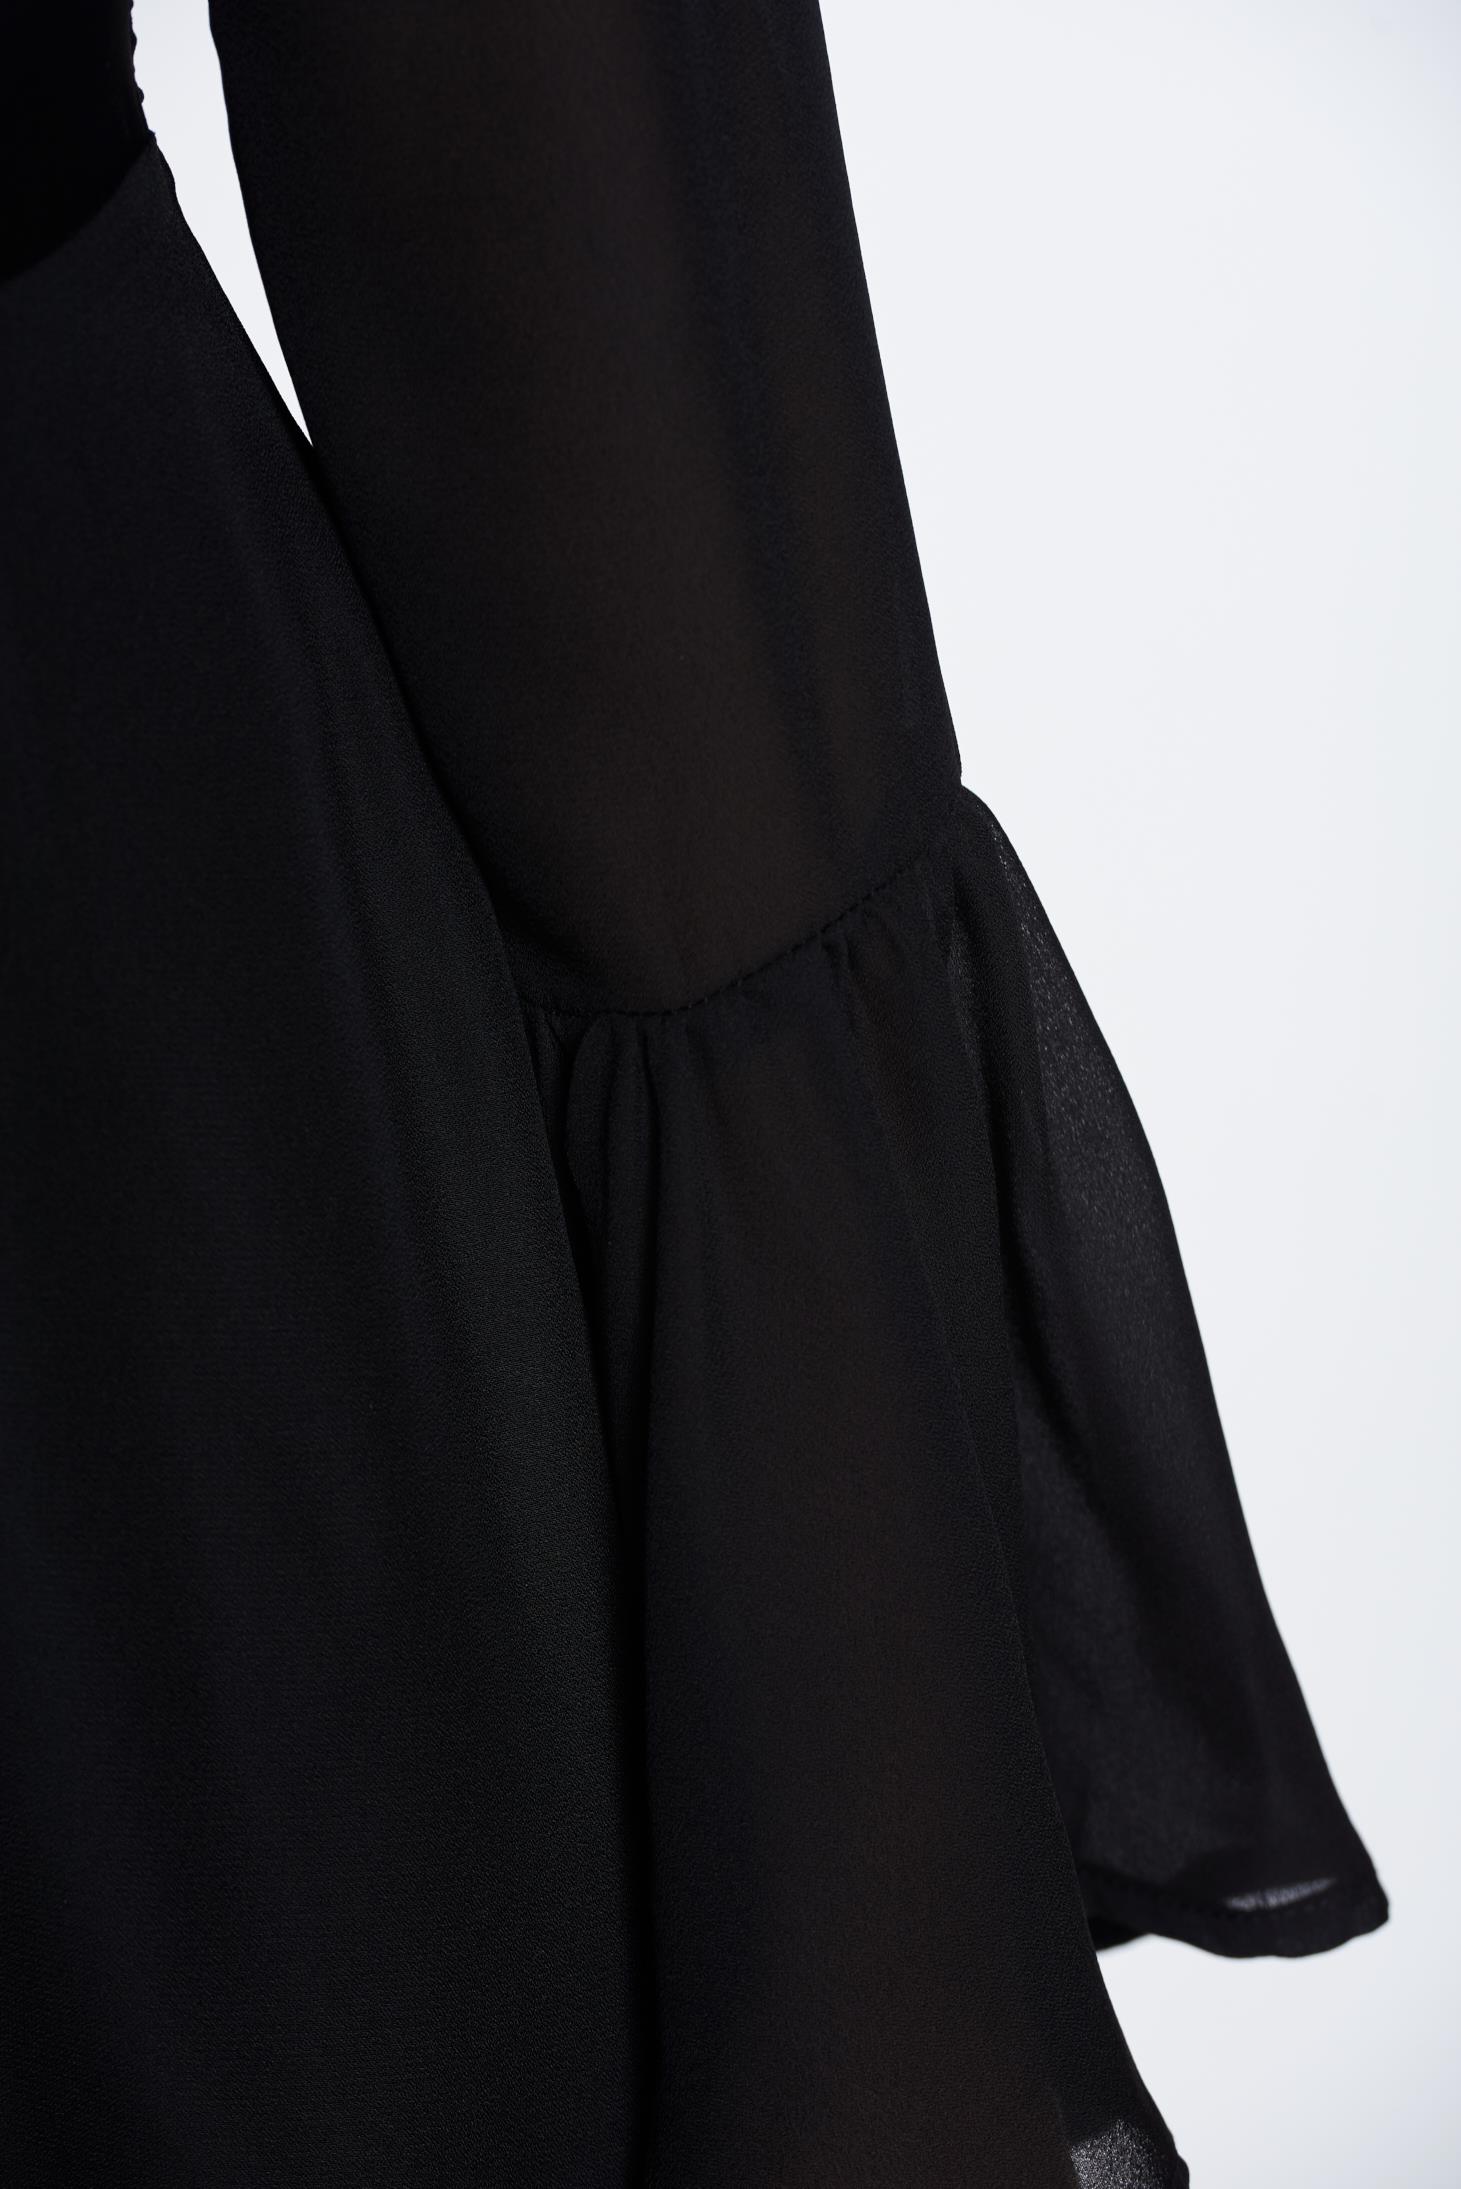 PrettyGirl black elegant daily dress bare back from voile fabric